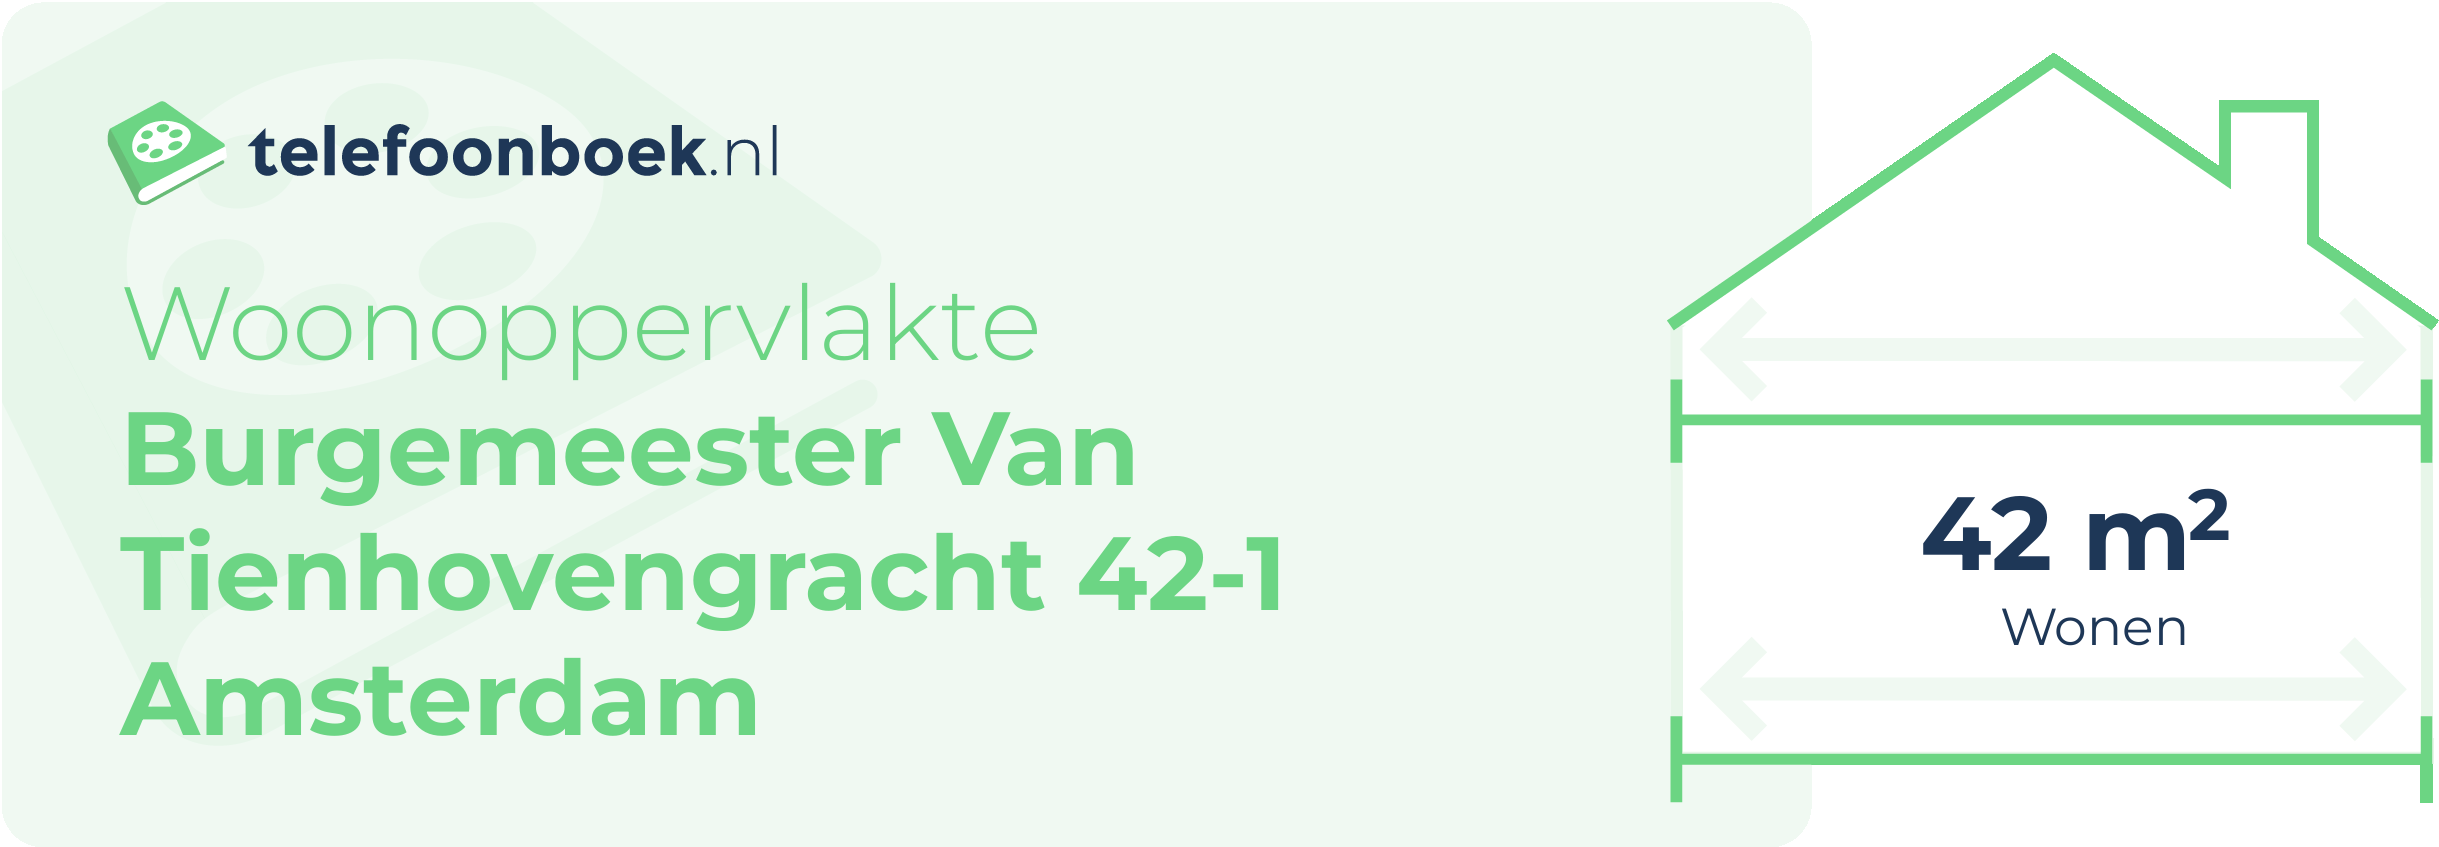 Woonoppervlakte Burgemeester Van Tienhovengracht 42-1 Amsterdam